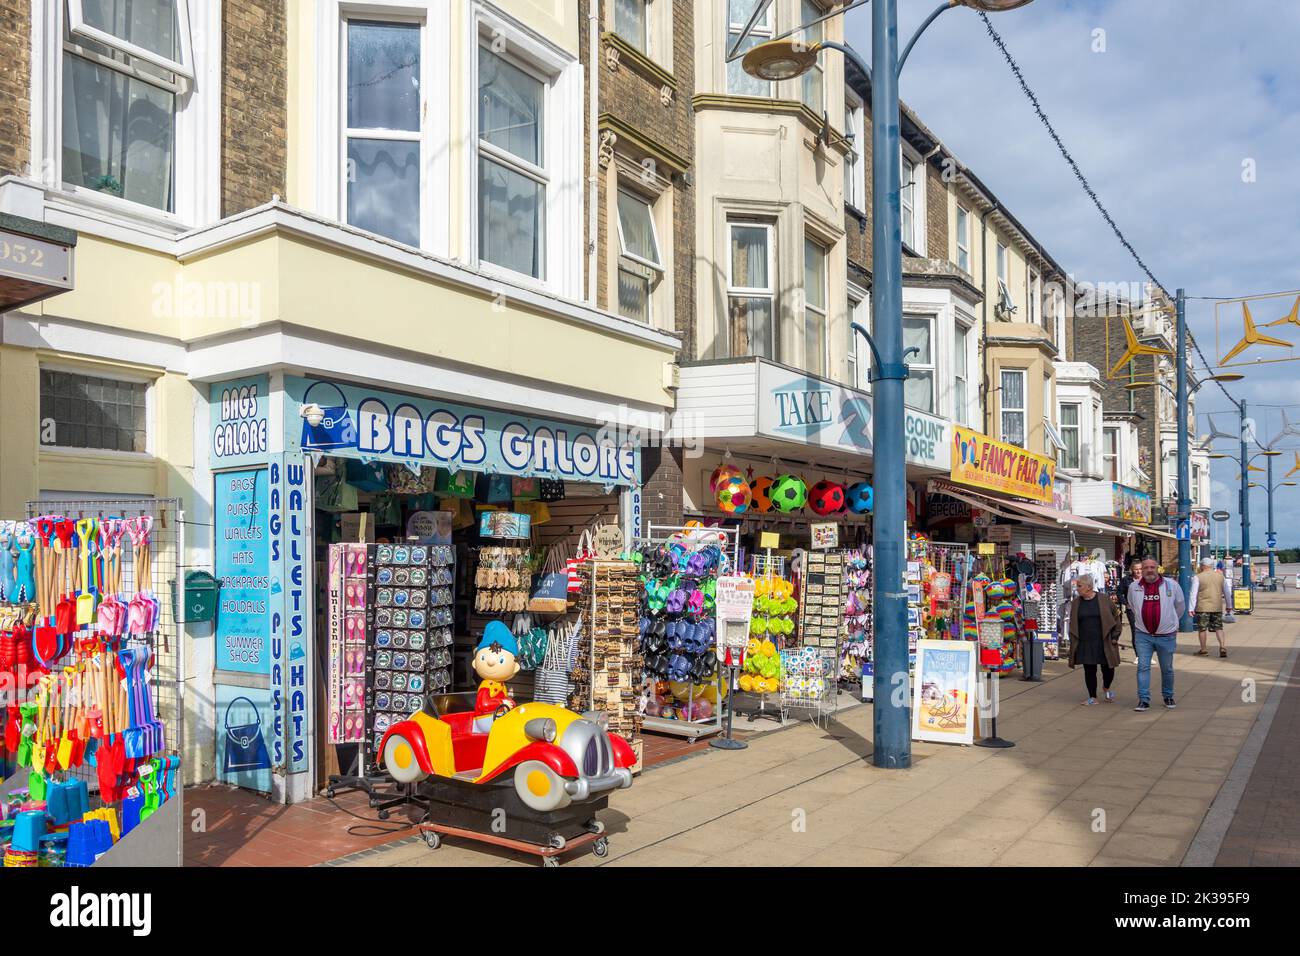 Boutiques de souvenirs, Regent Road, Great Yarmouth, Norfolk, Angleterre, Royaume-Uni Banque D'Images